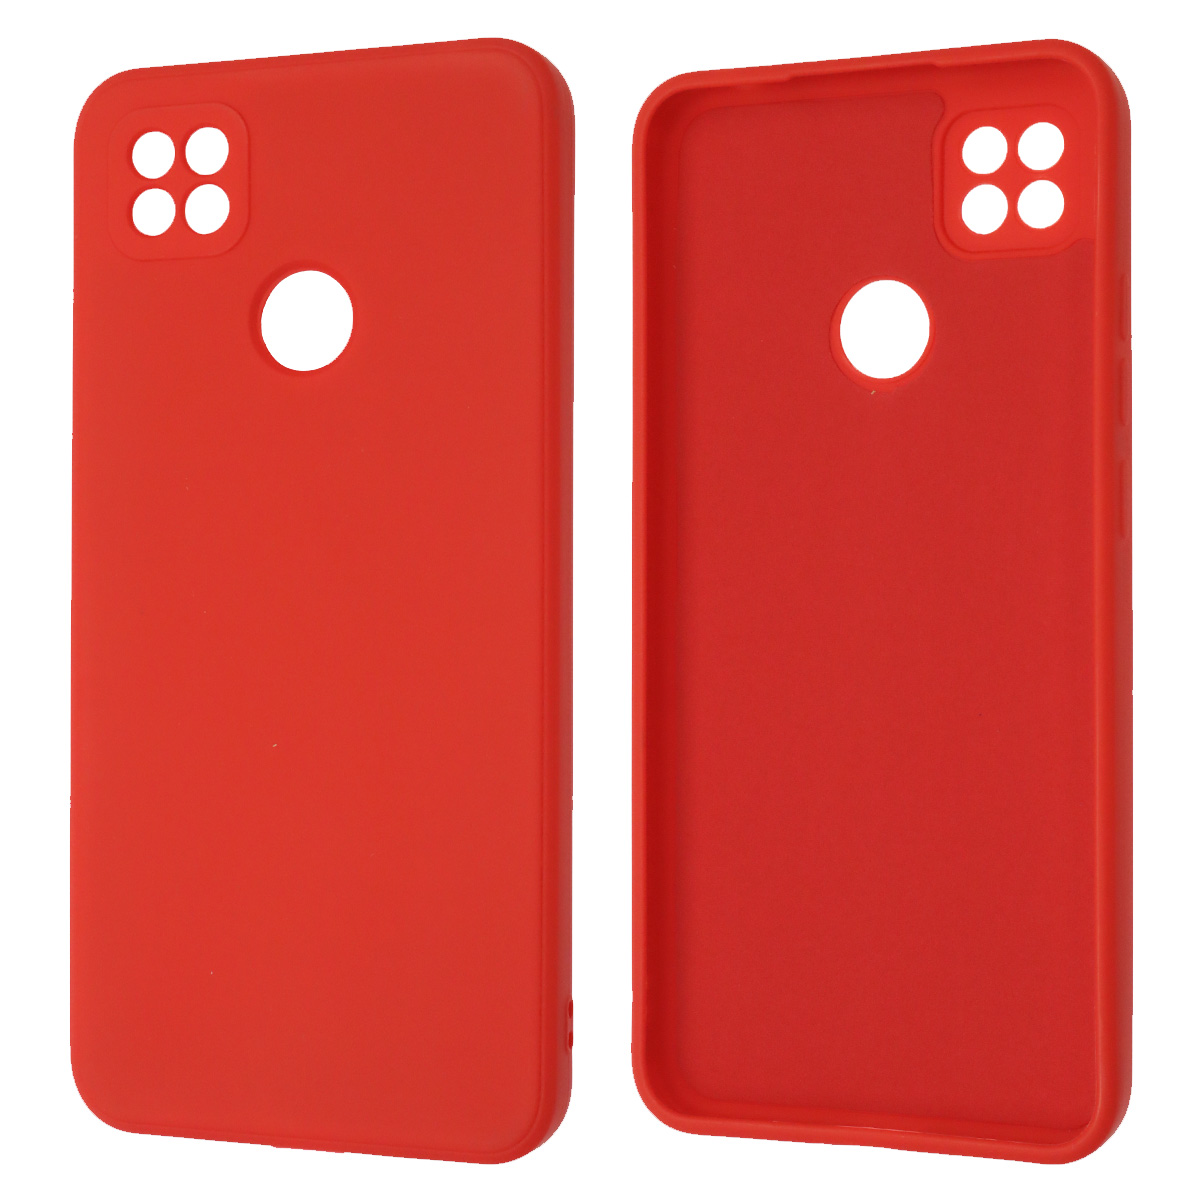 Чехол накладка для XIAOMI Redmi 9C, Redmi 10A, силикон, бархат, цвет красный